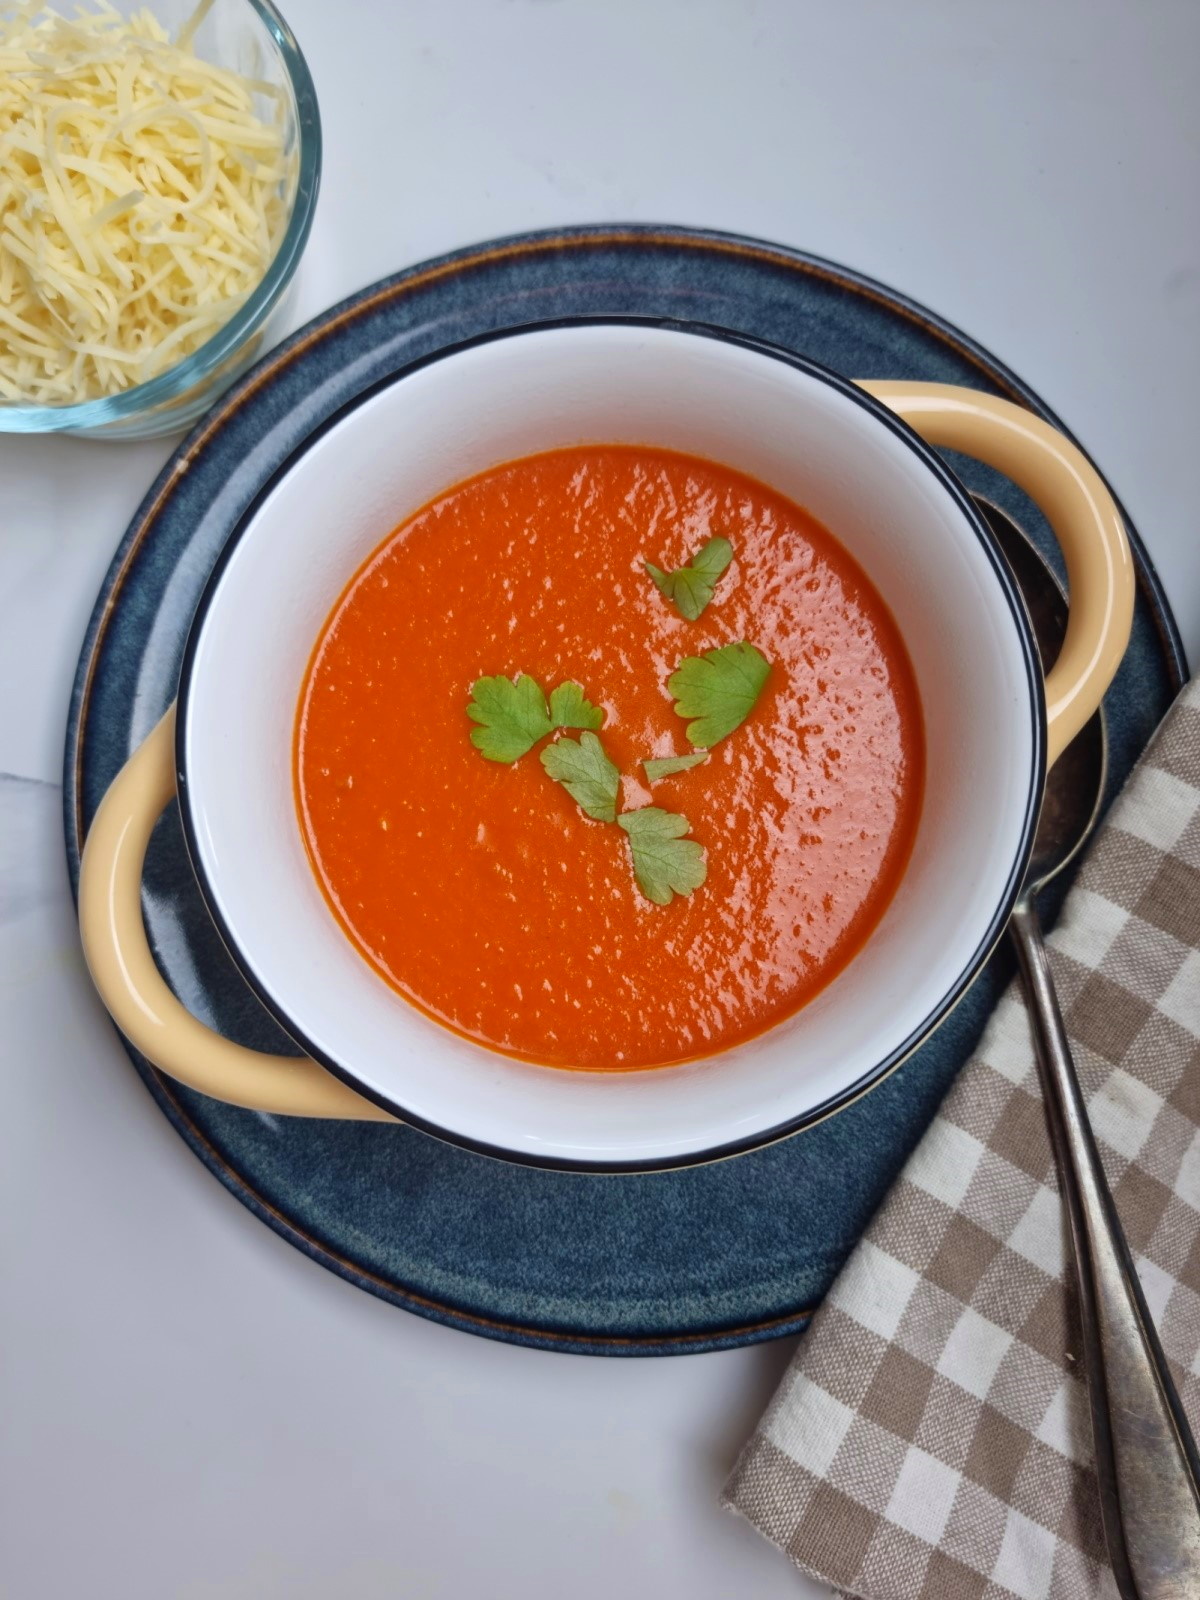 Soupe Tomates aux Vermicelles